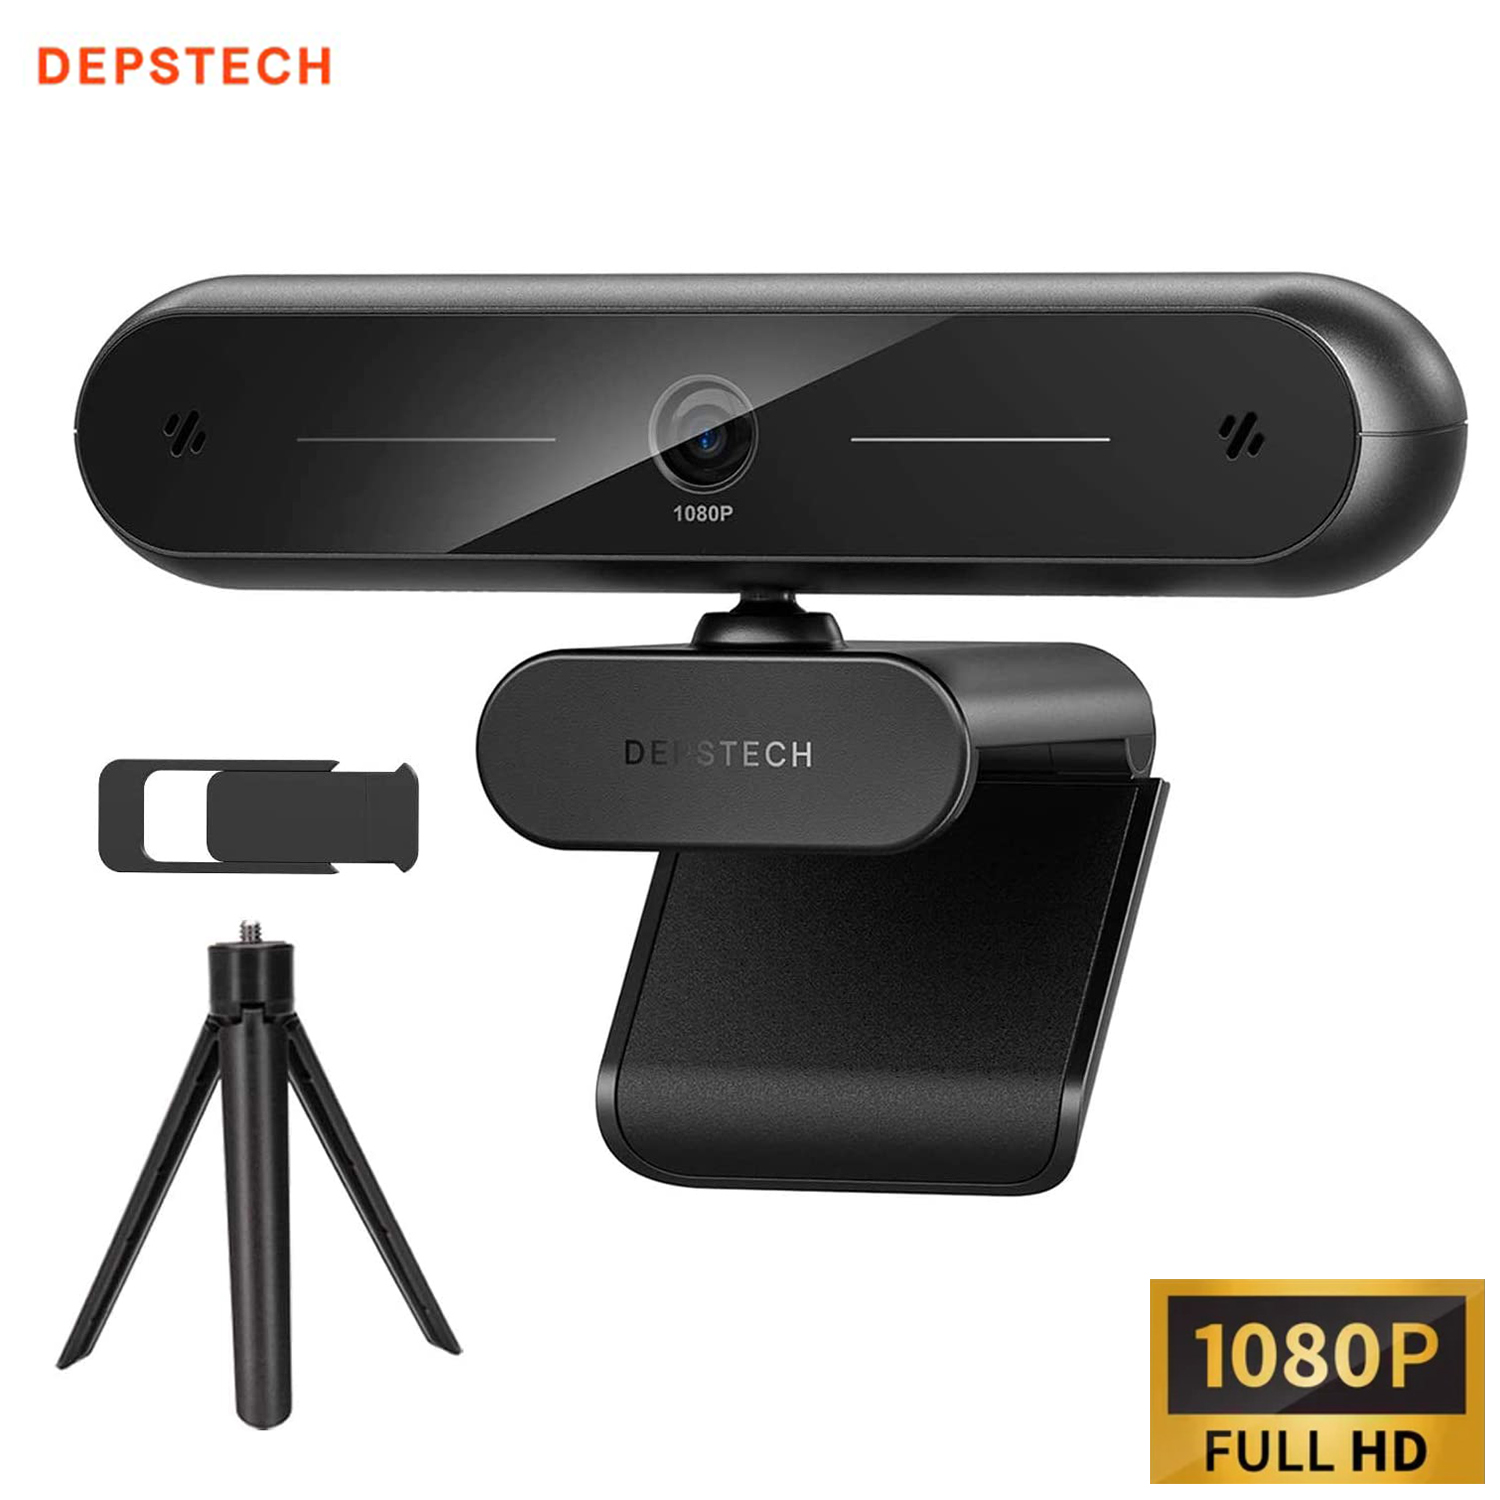 DEPSTECH ウェブカメラ 1080P 高画質 QHD USB webカメラ デュアルマイク内蔵 三脚付き プライバシーシャッター付き 広い視野角 web会議 オンライン授業 PCカメラ DW10